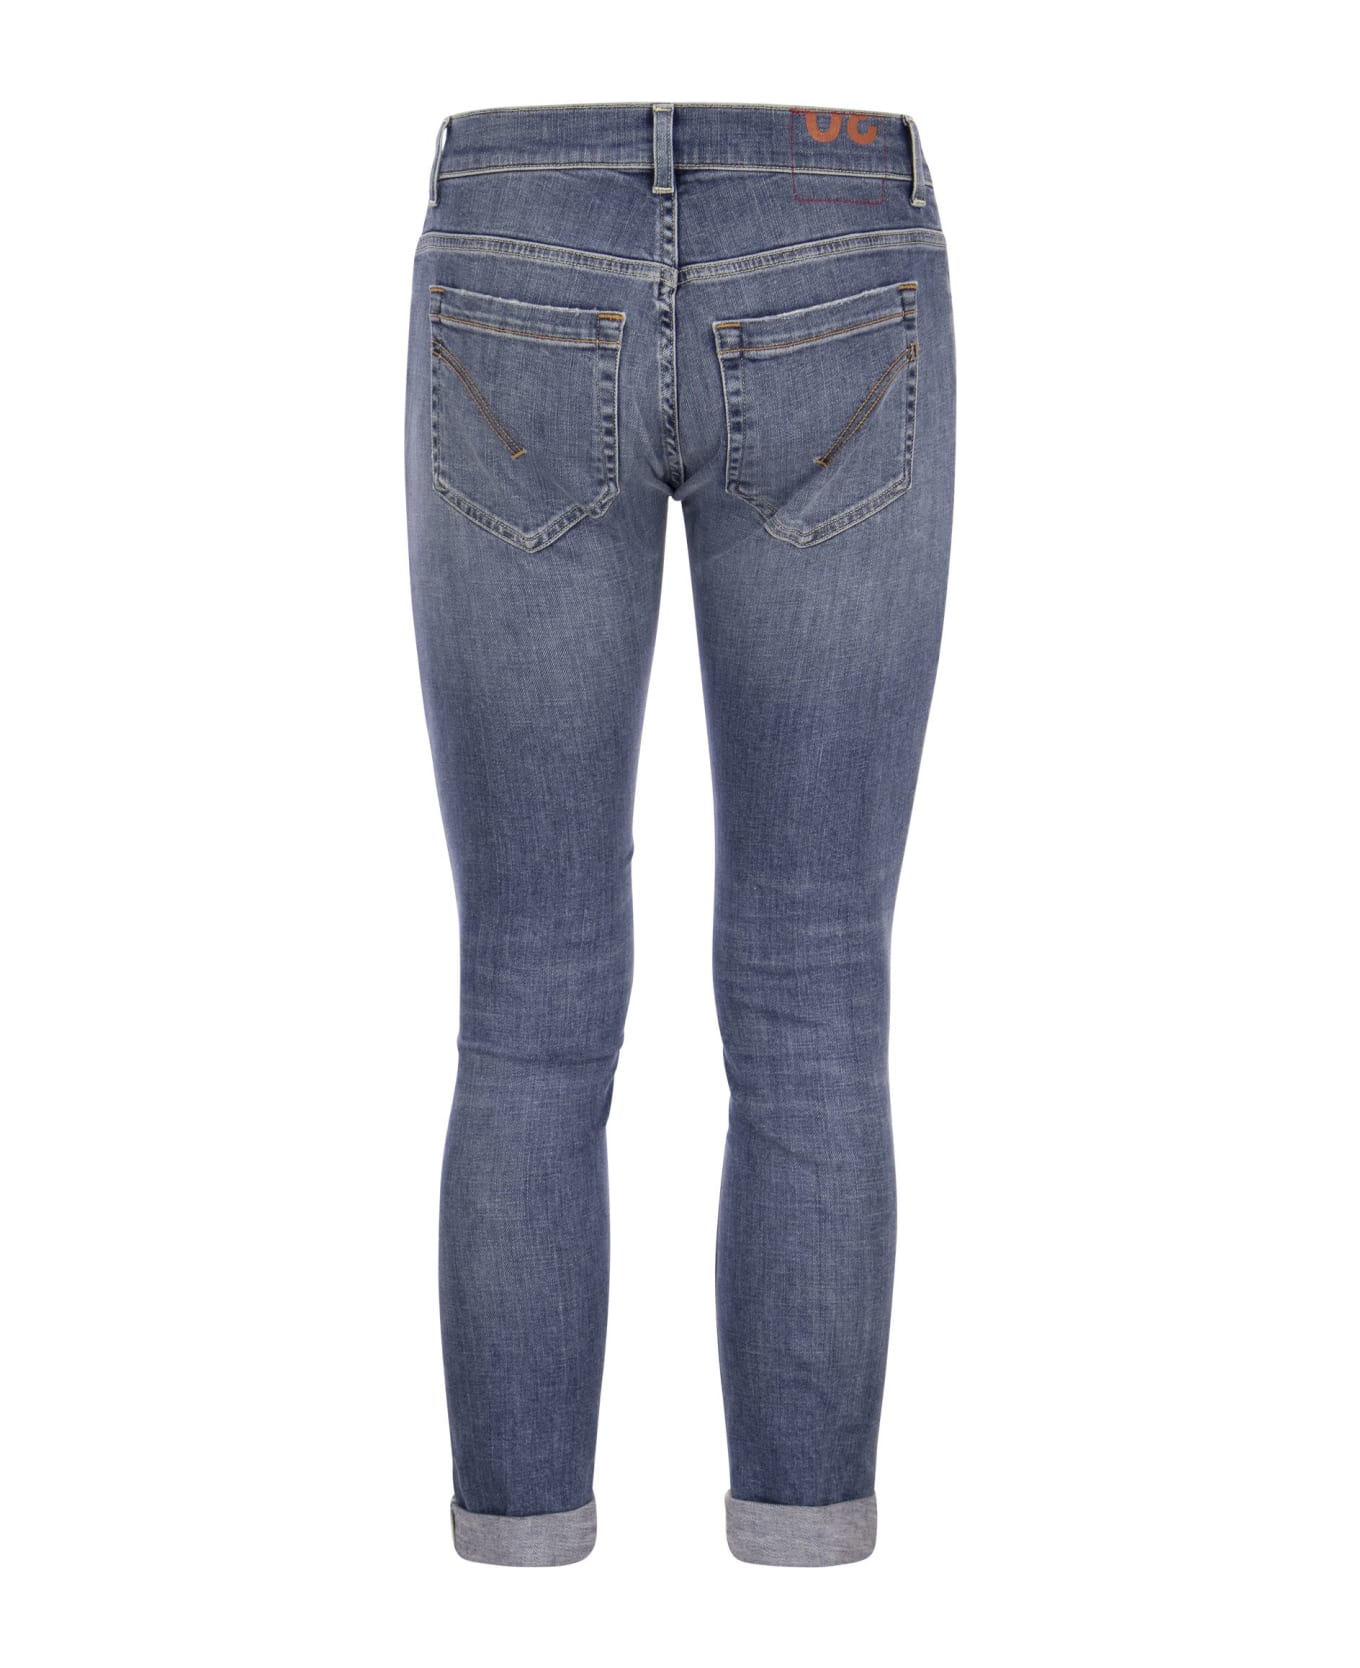 Dondup George - Five Pocket Jeans - Light Denim